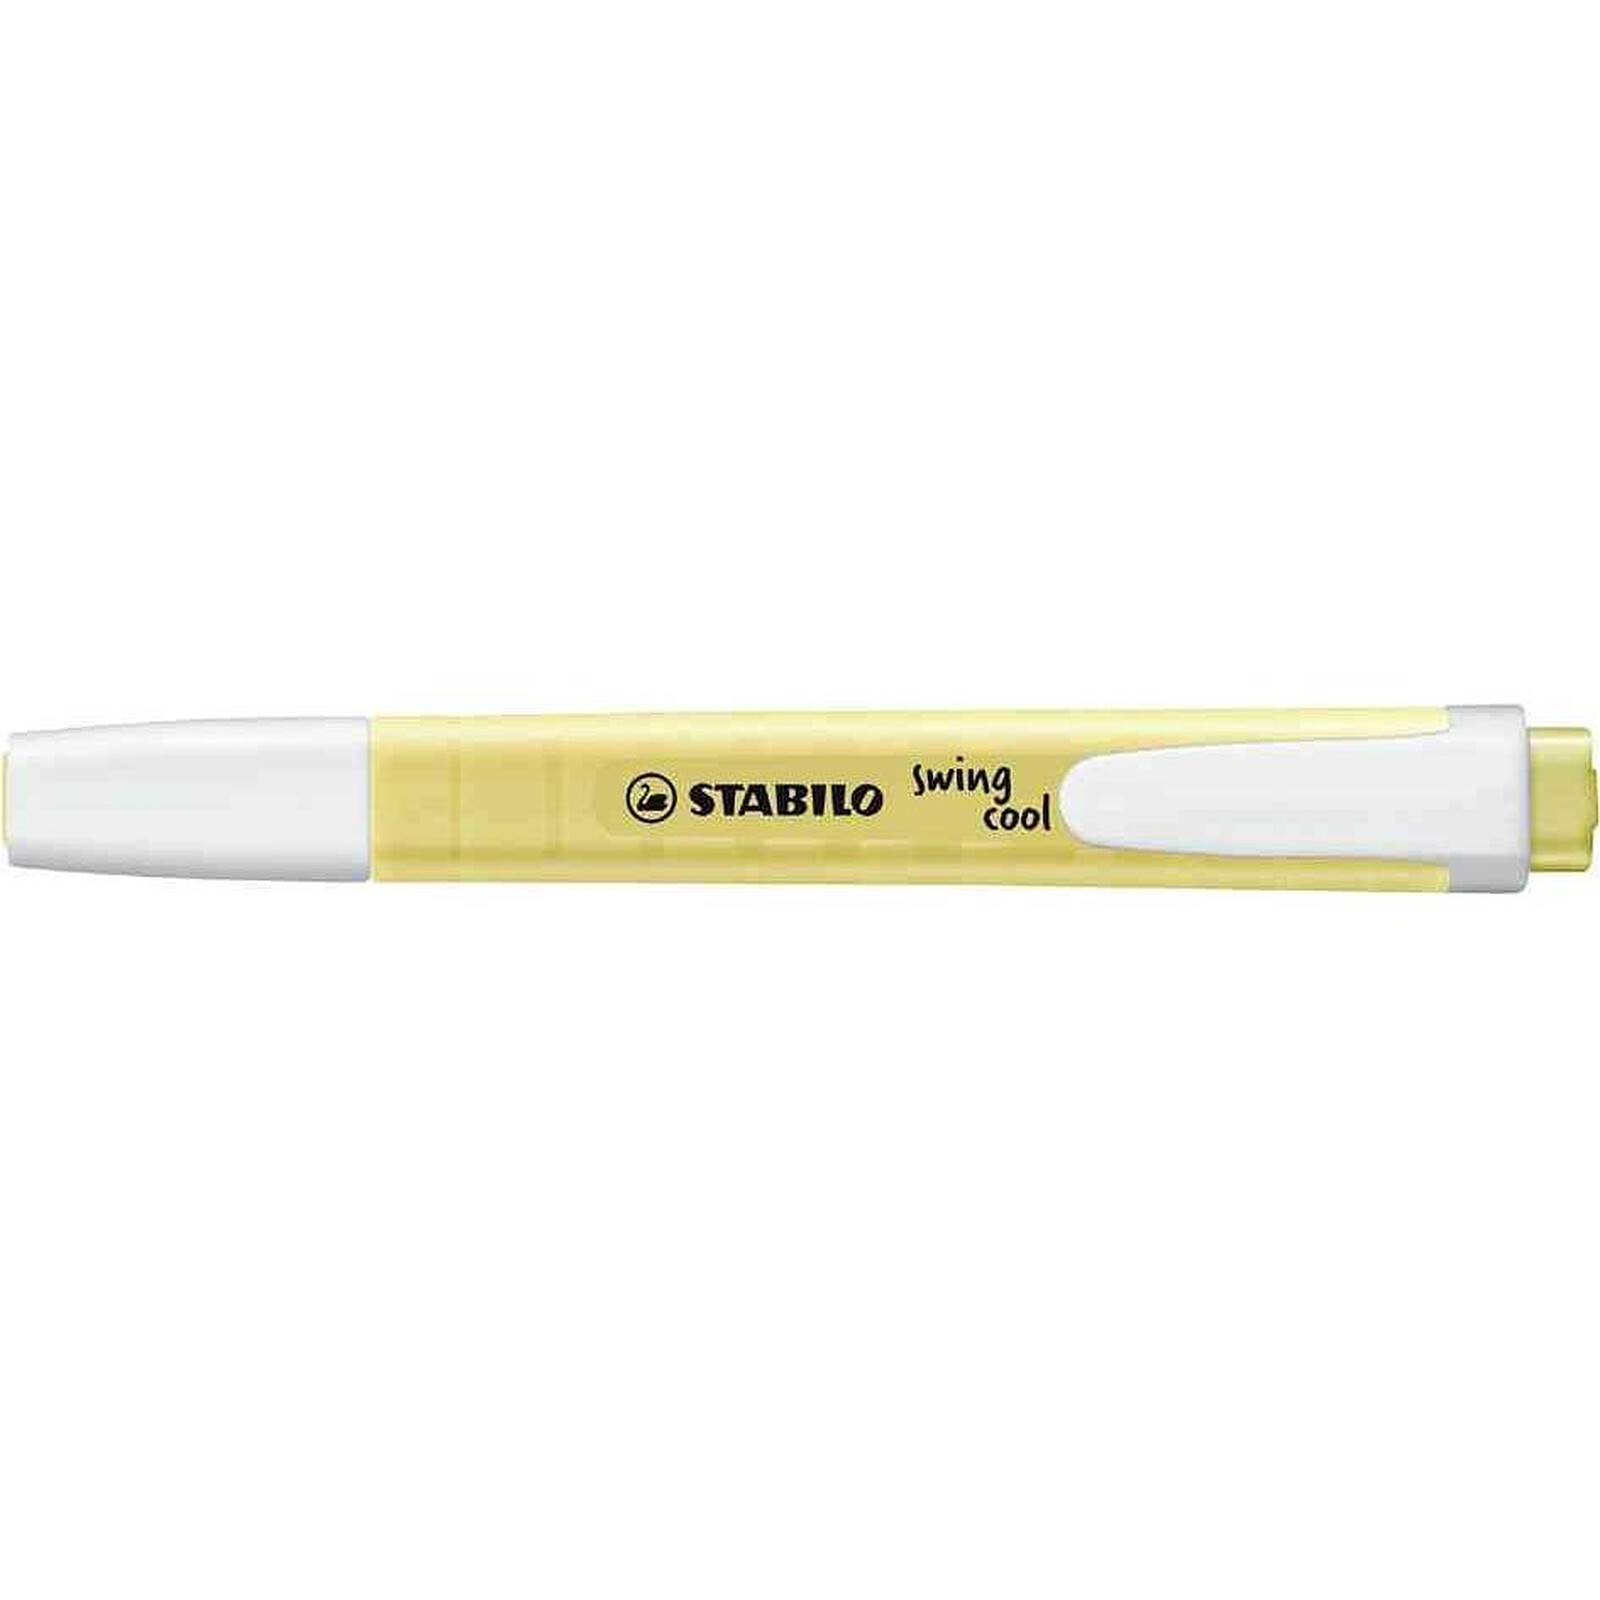 Surligneur - STABILO swing cool Pastel Edition - Lot de 10 - Crème de jaune  - Cdiscount Beaux-Arts et Loisirs créatifs